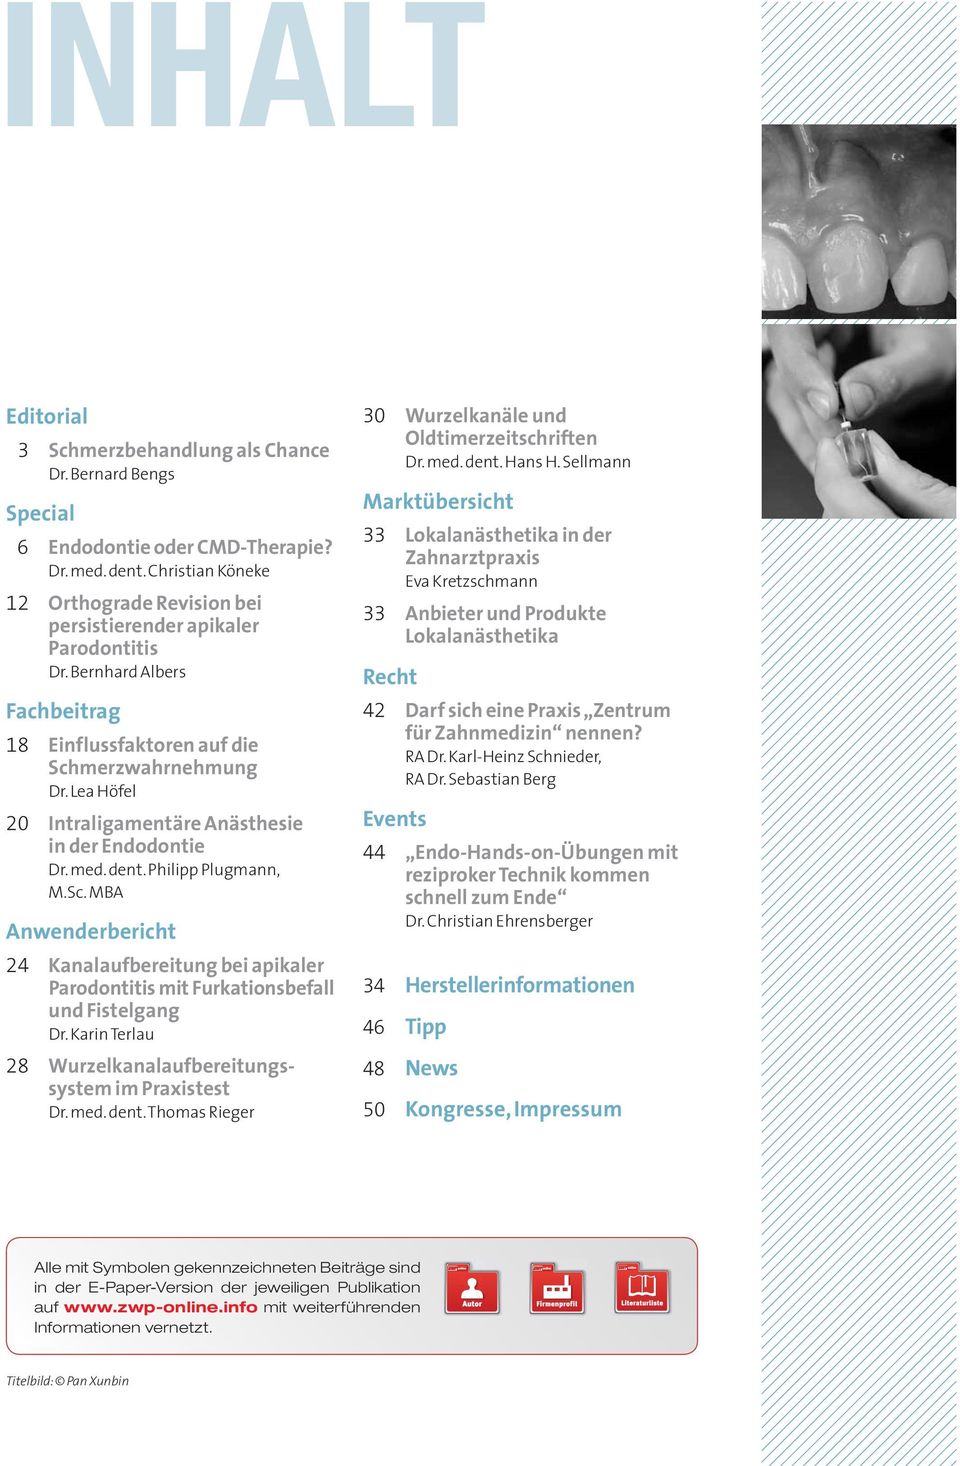 Lea Höfel 20 Intraligamentäre Anästhesie in der Endodontie Dr. med. dent. Philipp Plugmann, M.Sc.